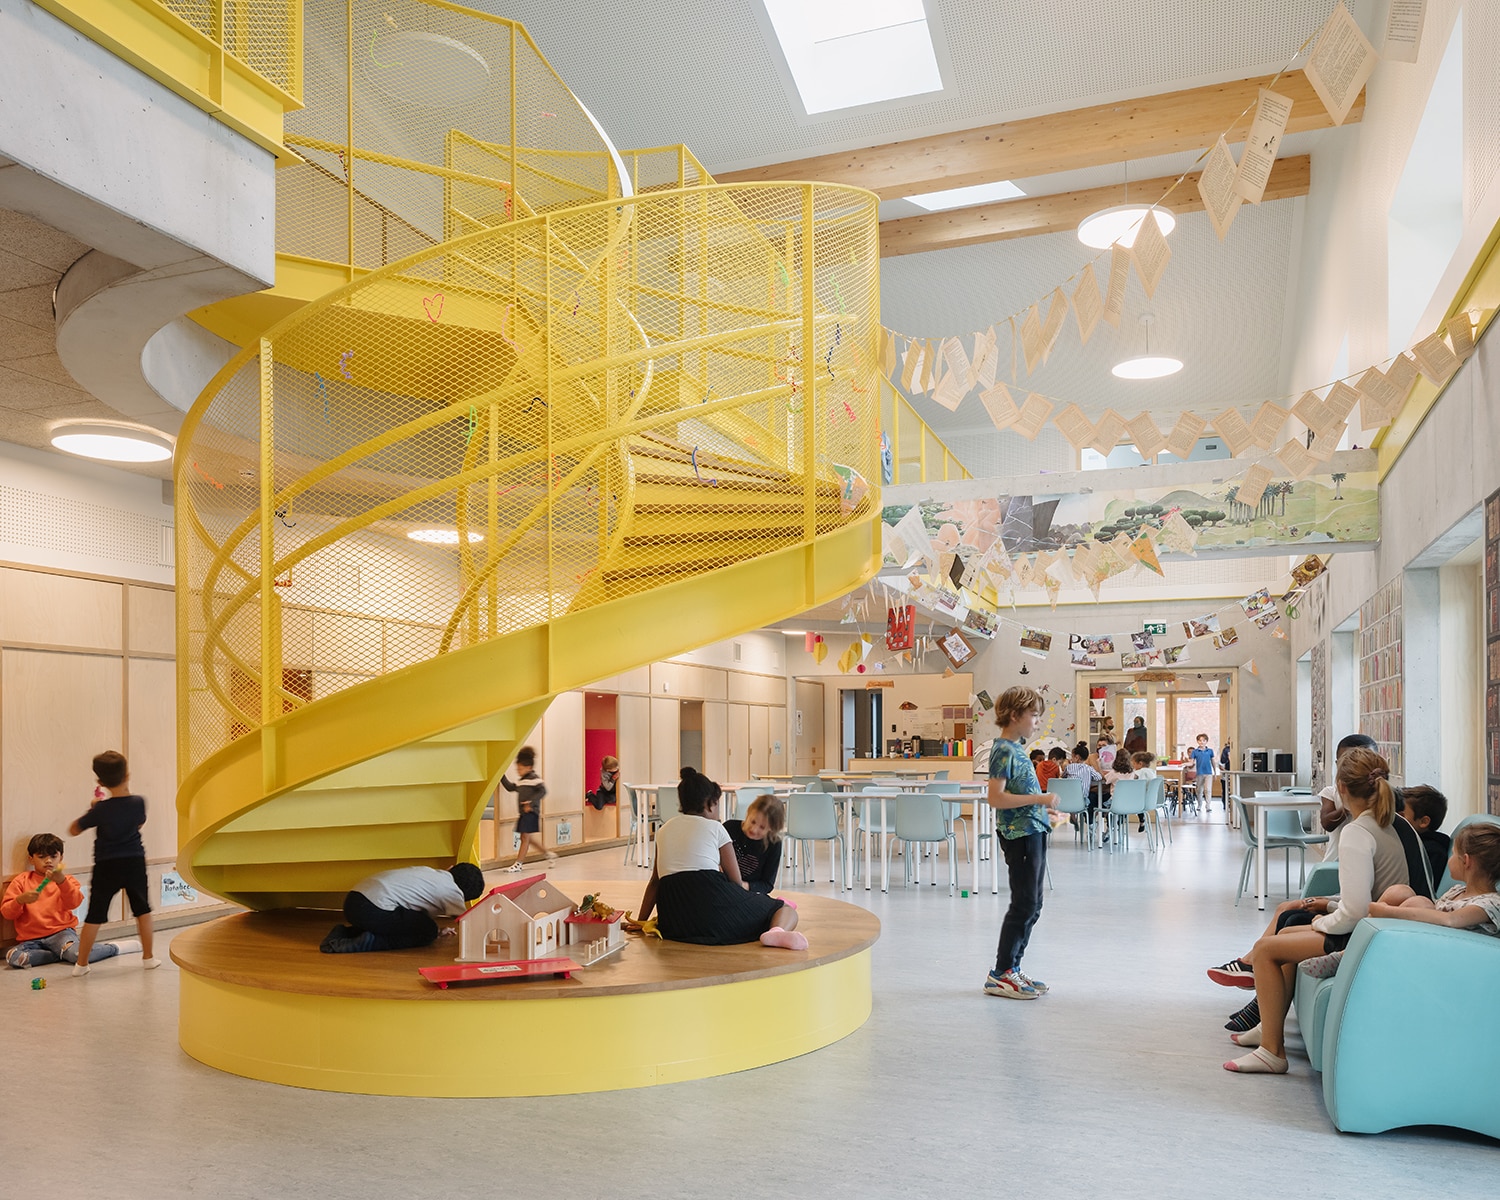 Der Kindergarten in Zwijndrecht von dem Genter Architketurbüro Havana vereint in einem Hybrid-Modell Bildung und industrielle Lagerhallen. Foto: Stijn Bollaert